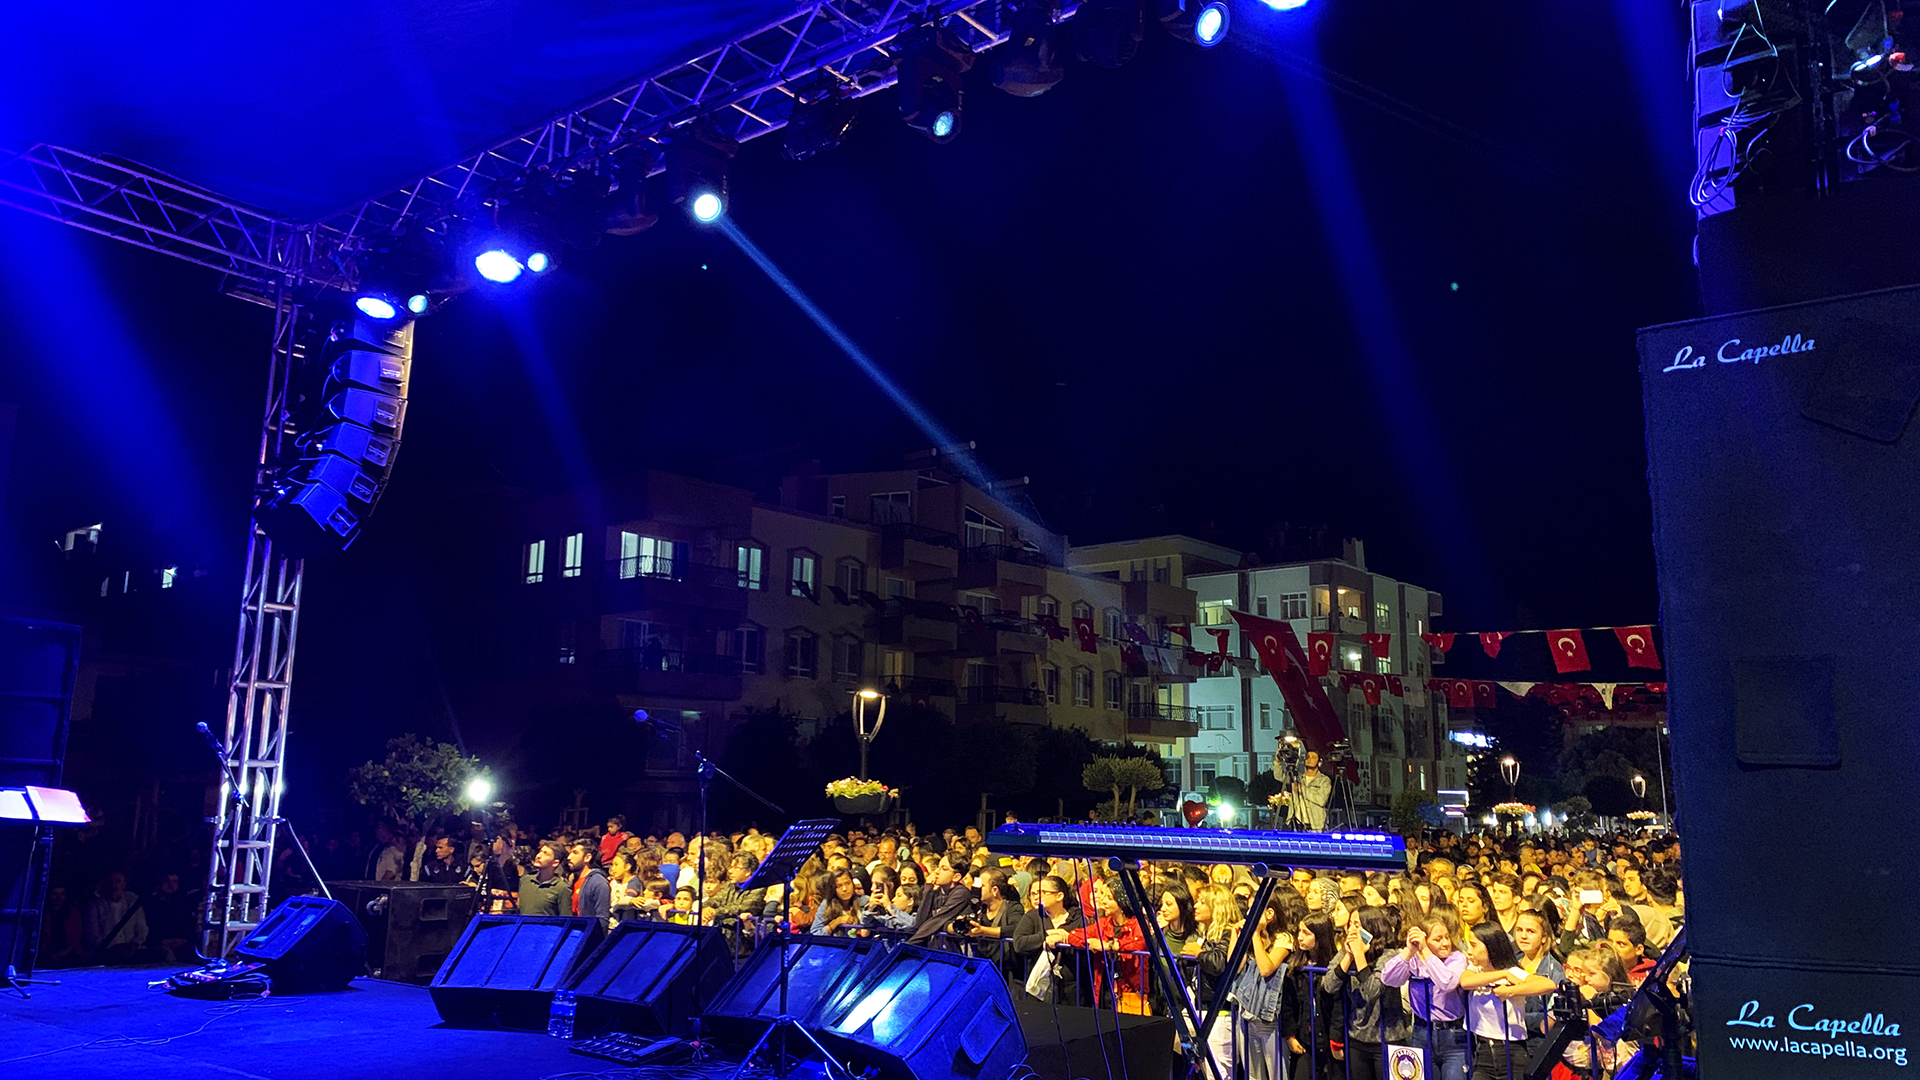 Demre Kekova Festival 2019